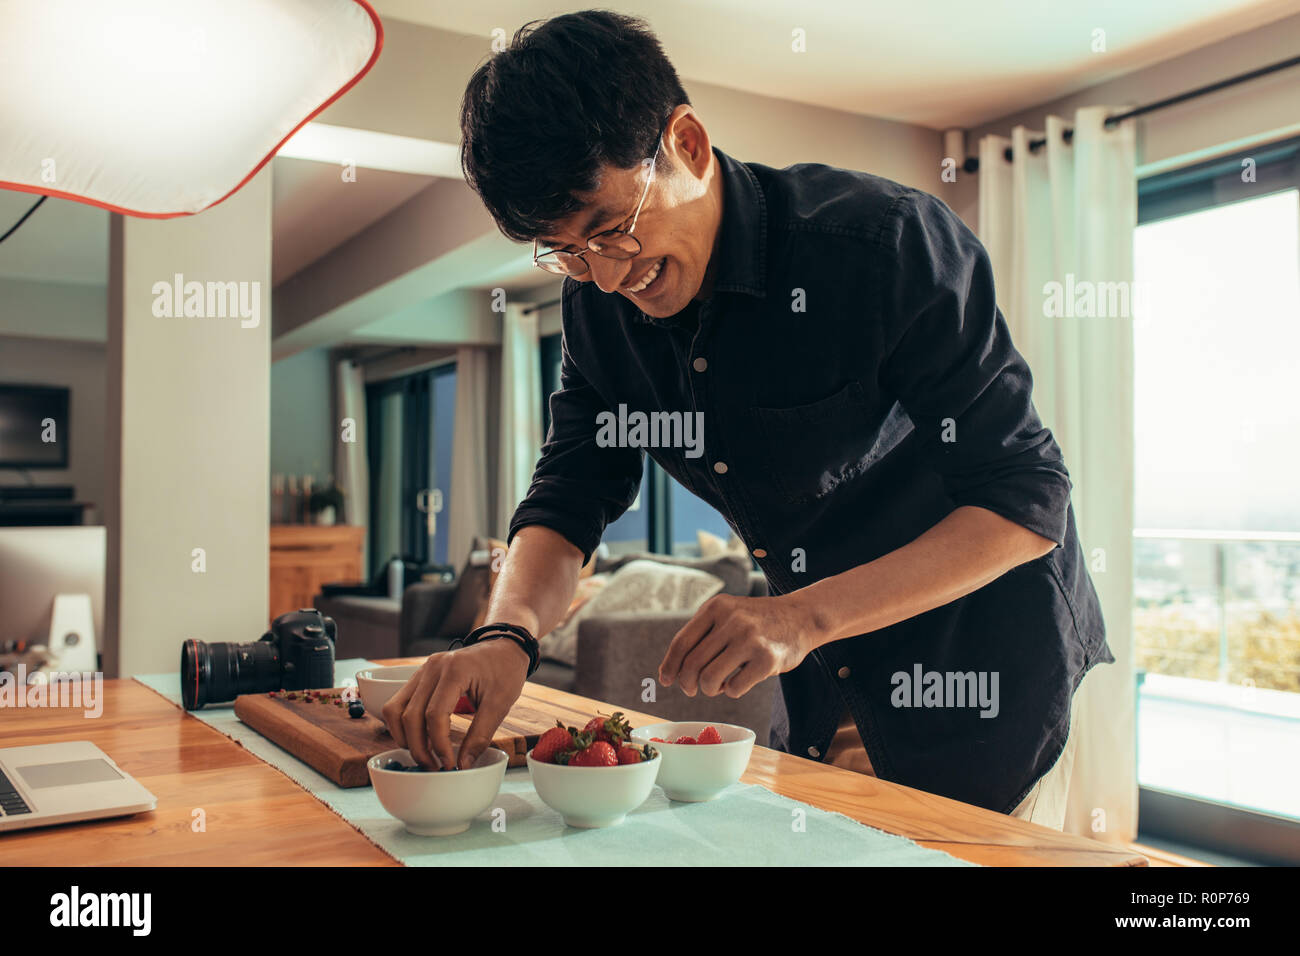 Sorridente fotografo alimentare cibo stile sulla tavola per sparare. Fotografo asiatico prepara il cibo per inserzione photoshoot. Foto Stock